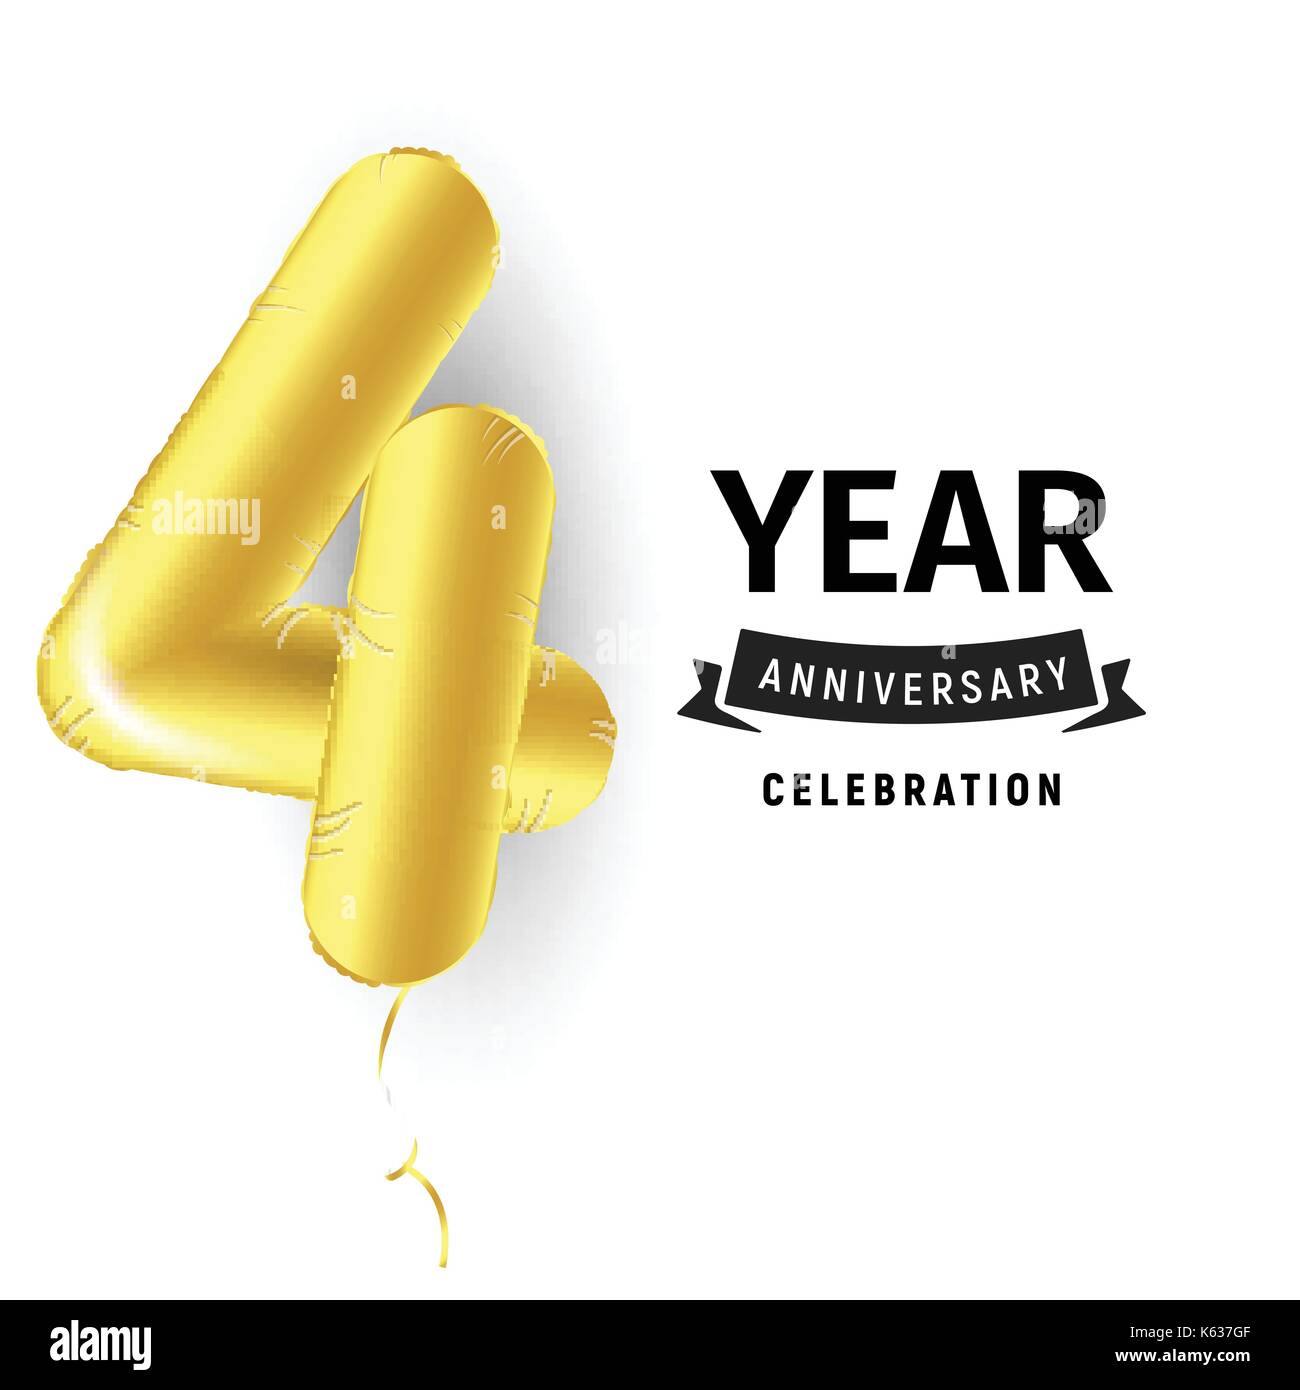 Gonfiabile palla dorata di un anno con il simbolo 4. illustrazione vettoriale o poster per la quarta per celebrare il compleanno di un bambino, business, anniversario. Illustrazione Vettoriale